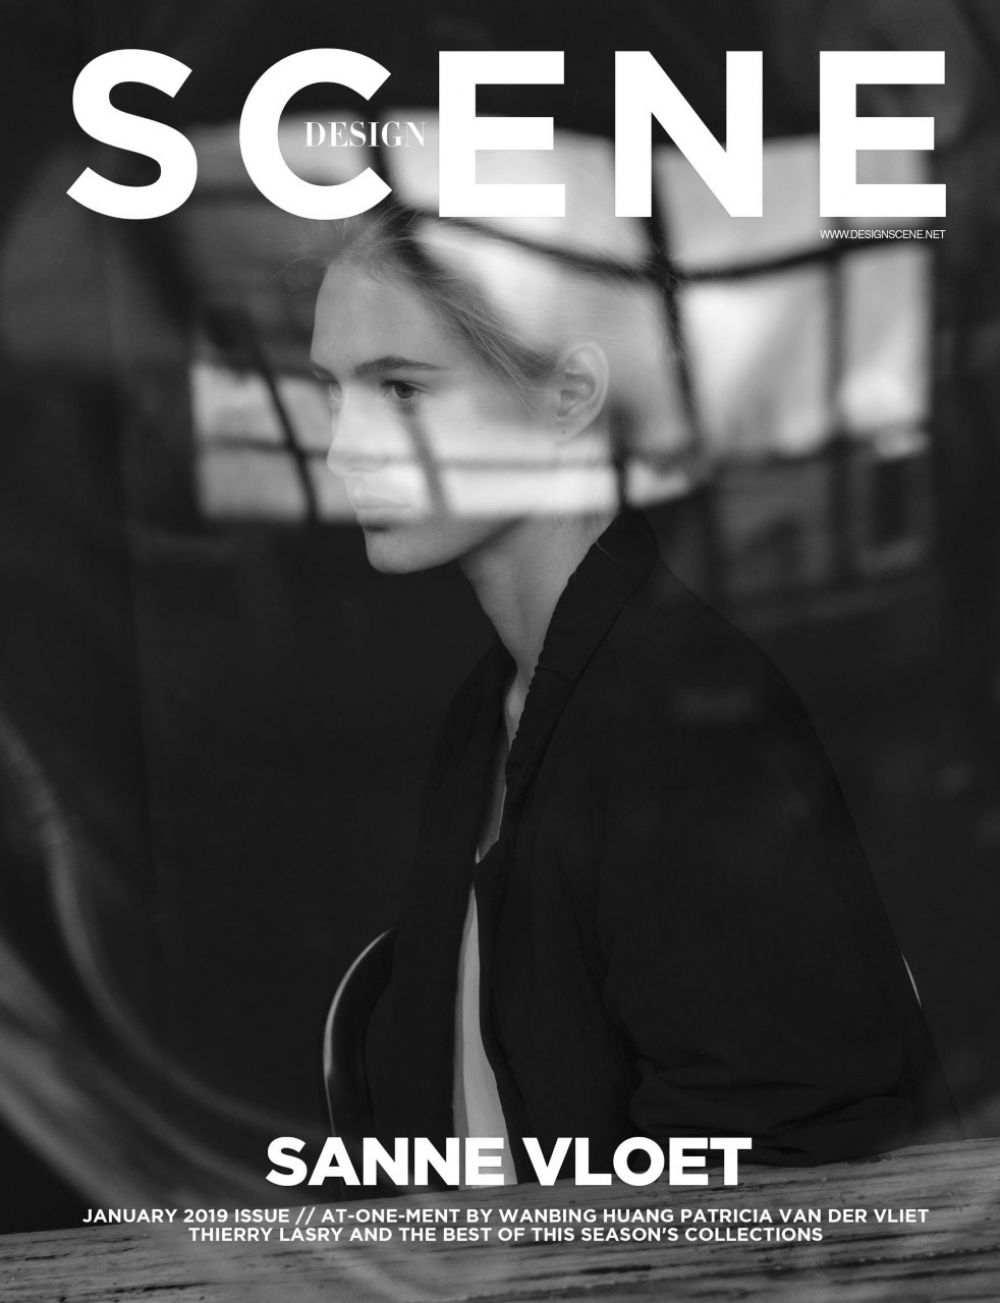 sanne-vloet-for-design-scene-magazine-january-2019-10.jpg